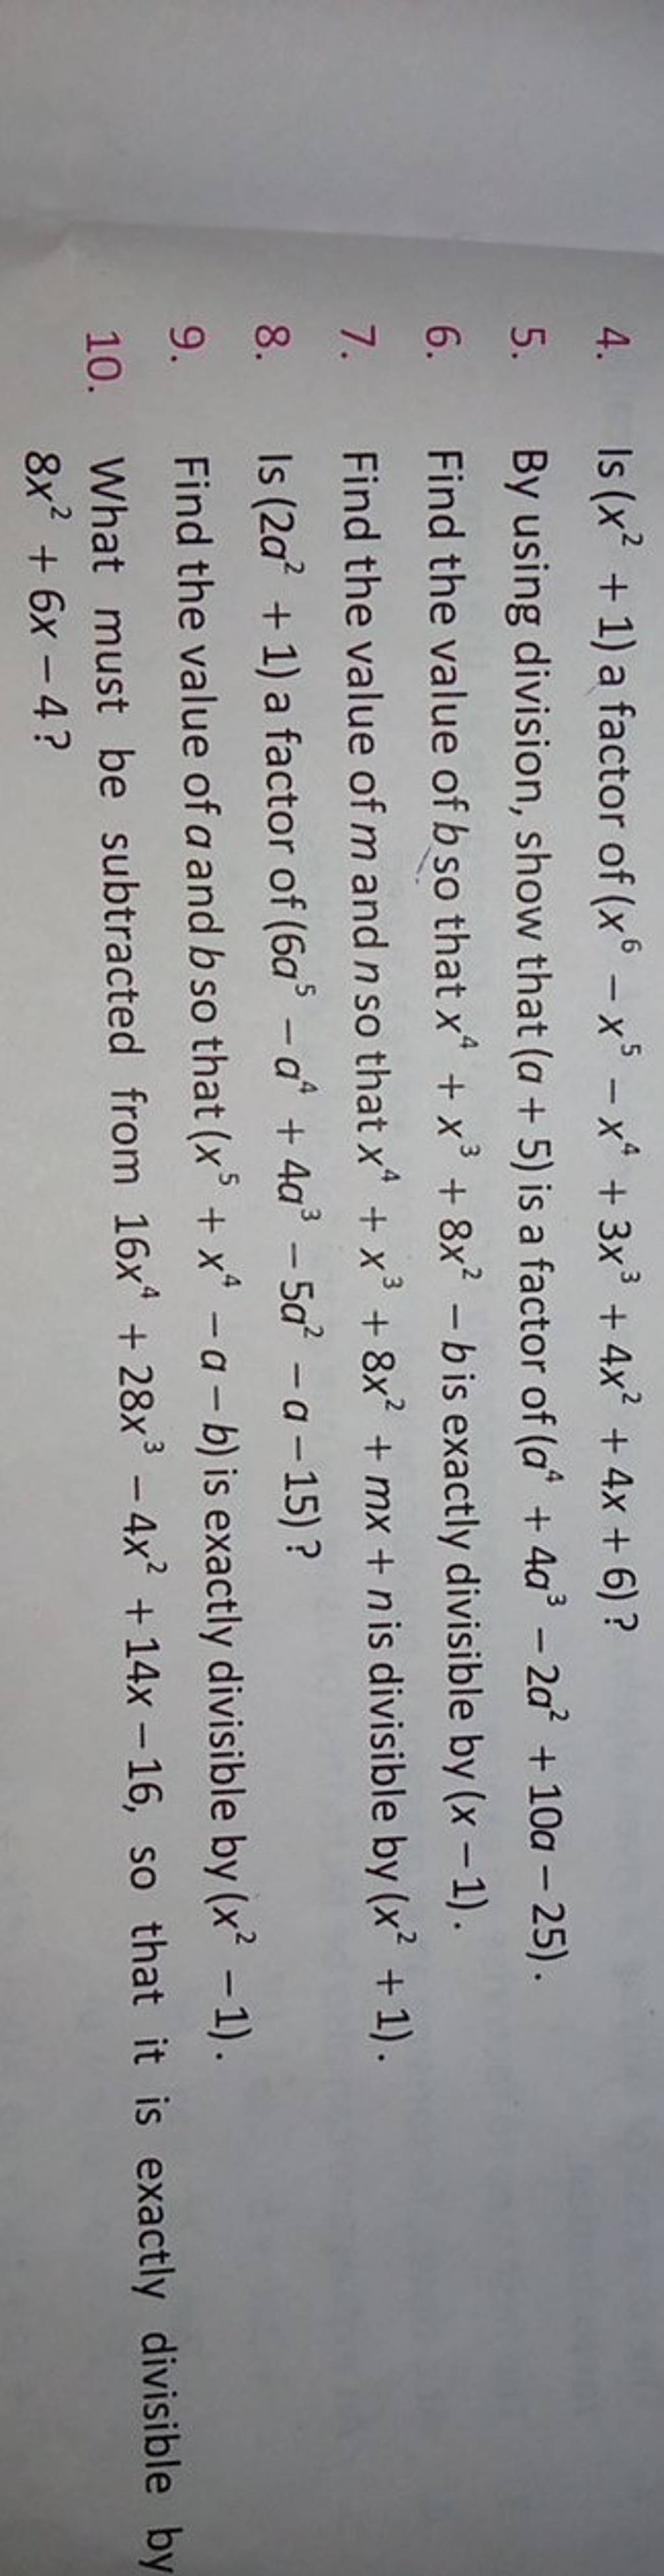 4. Is (x2+1) a factor of (x6−x5−x4+3x3+4x2+4x+6) ?
5. By using divisio